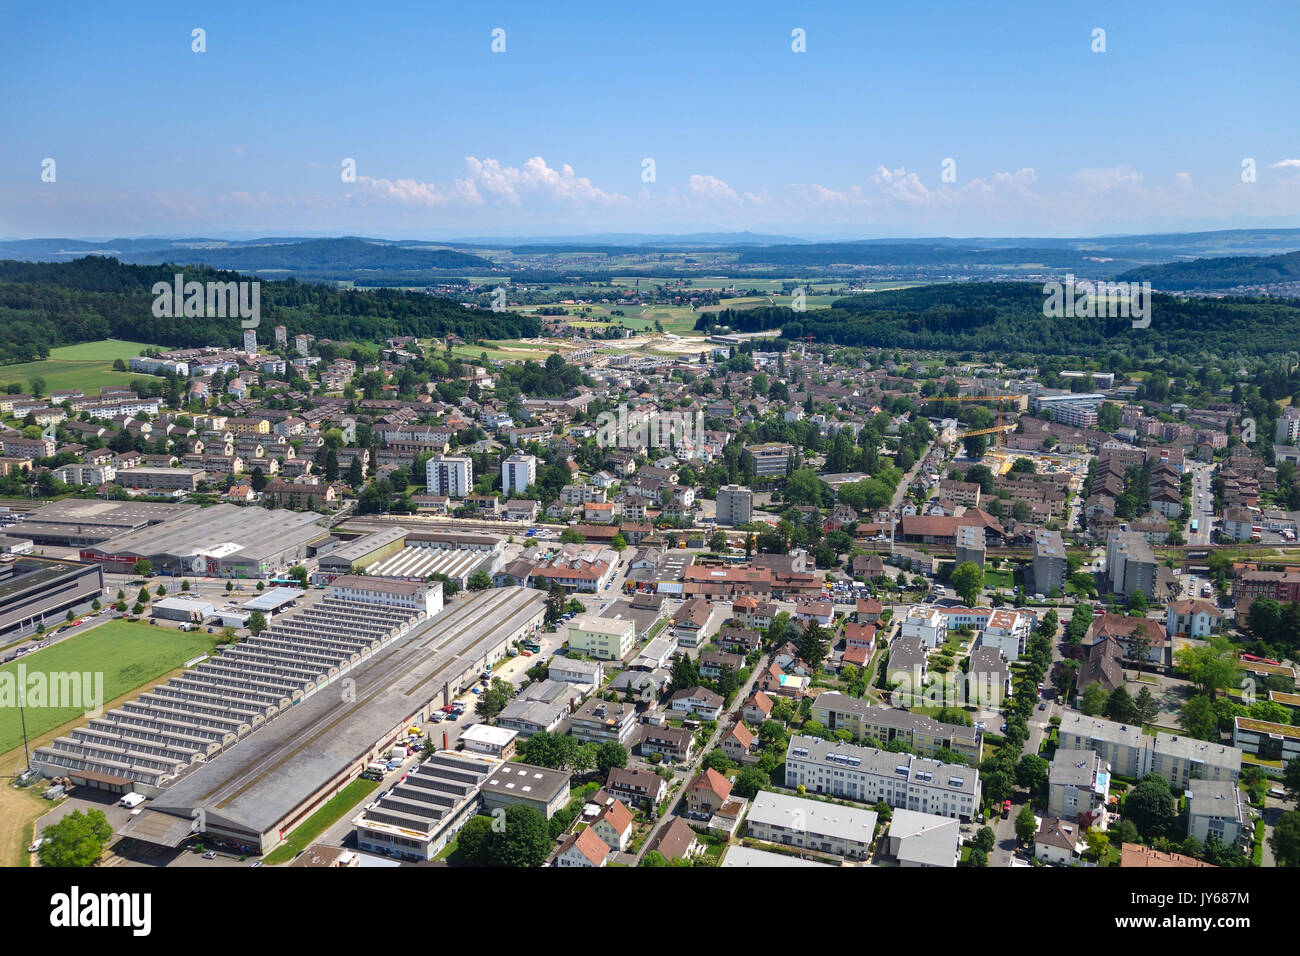 Luftbild der Stadt  Biel mit Mett-Bözingen *** Local Caption *** Berne, Biel, Bützingen, Studen, City, Switzerland, Aerial View, aerial photography, f Stock Photo